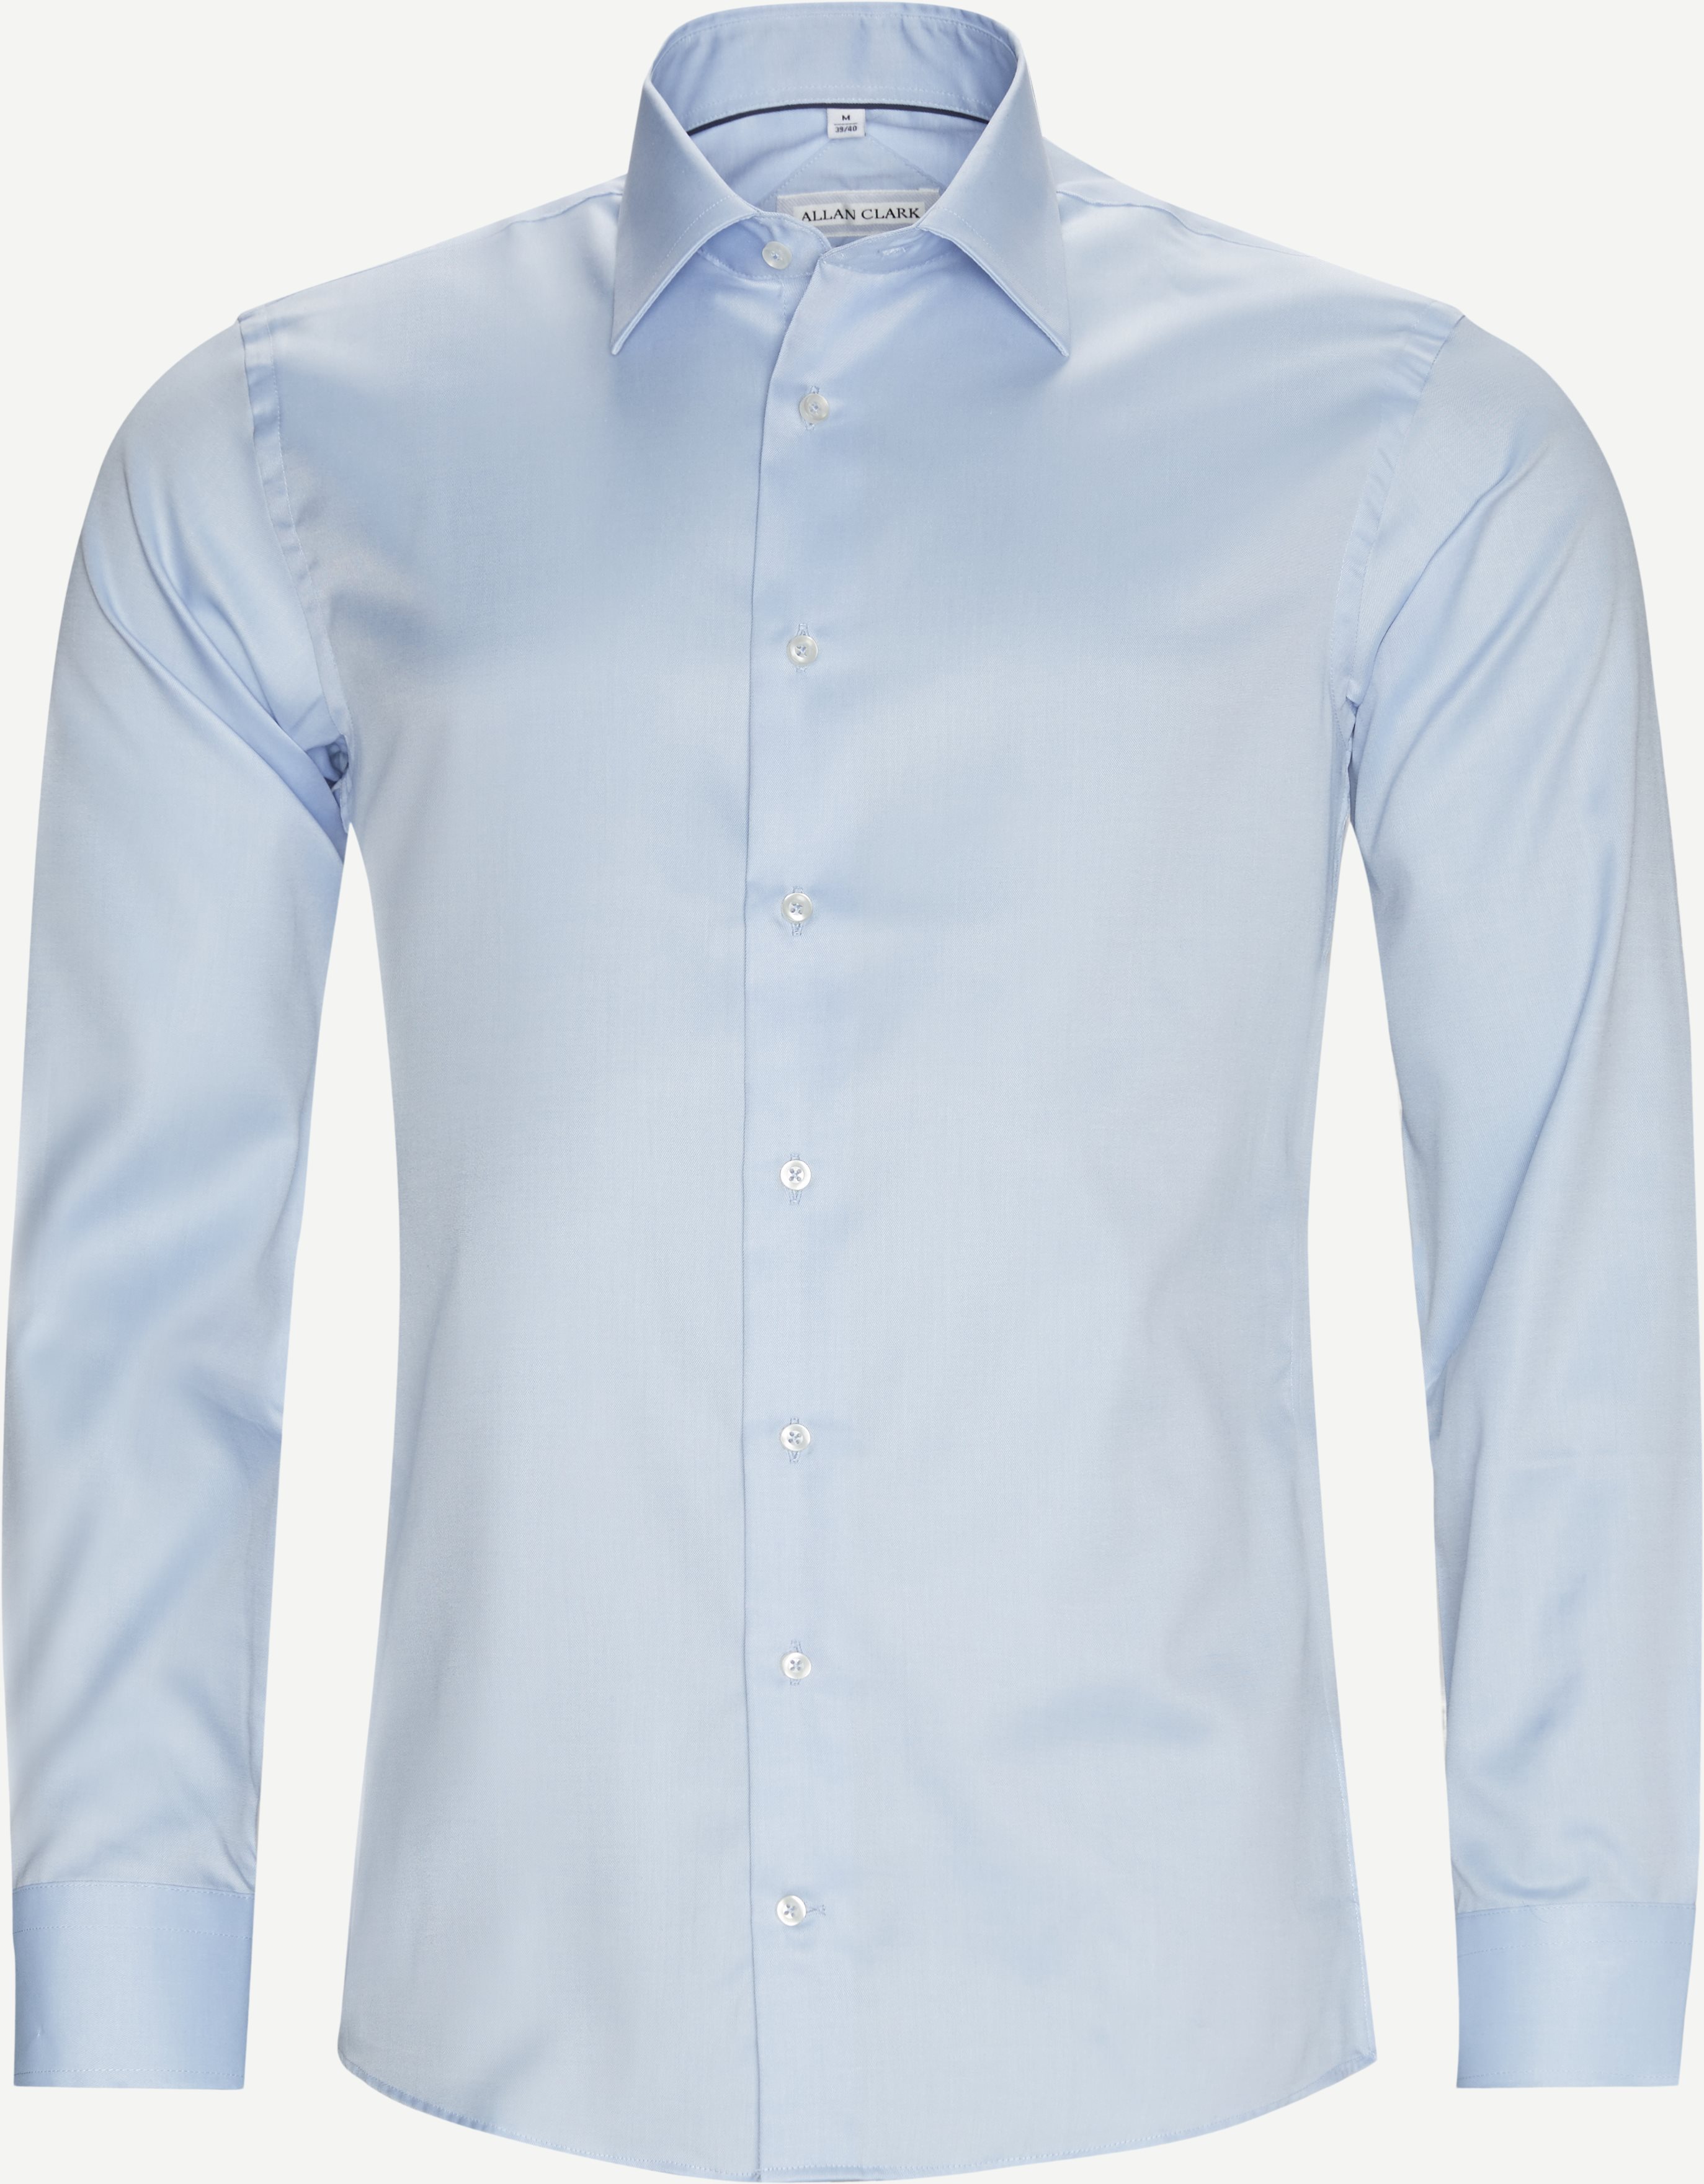 Nania skjorta - Skjortor - Blå